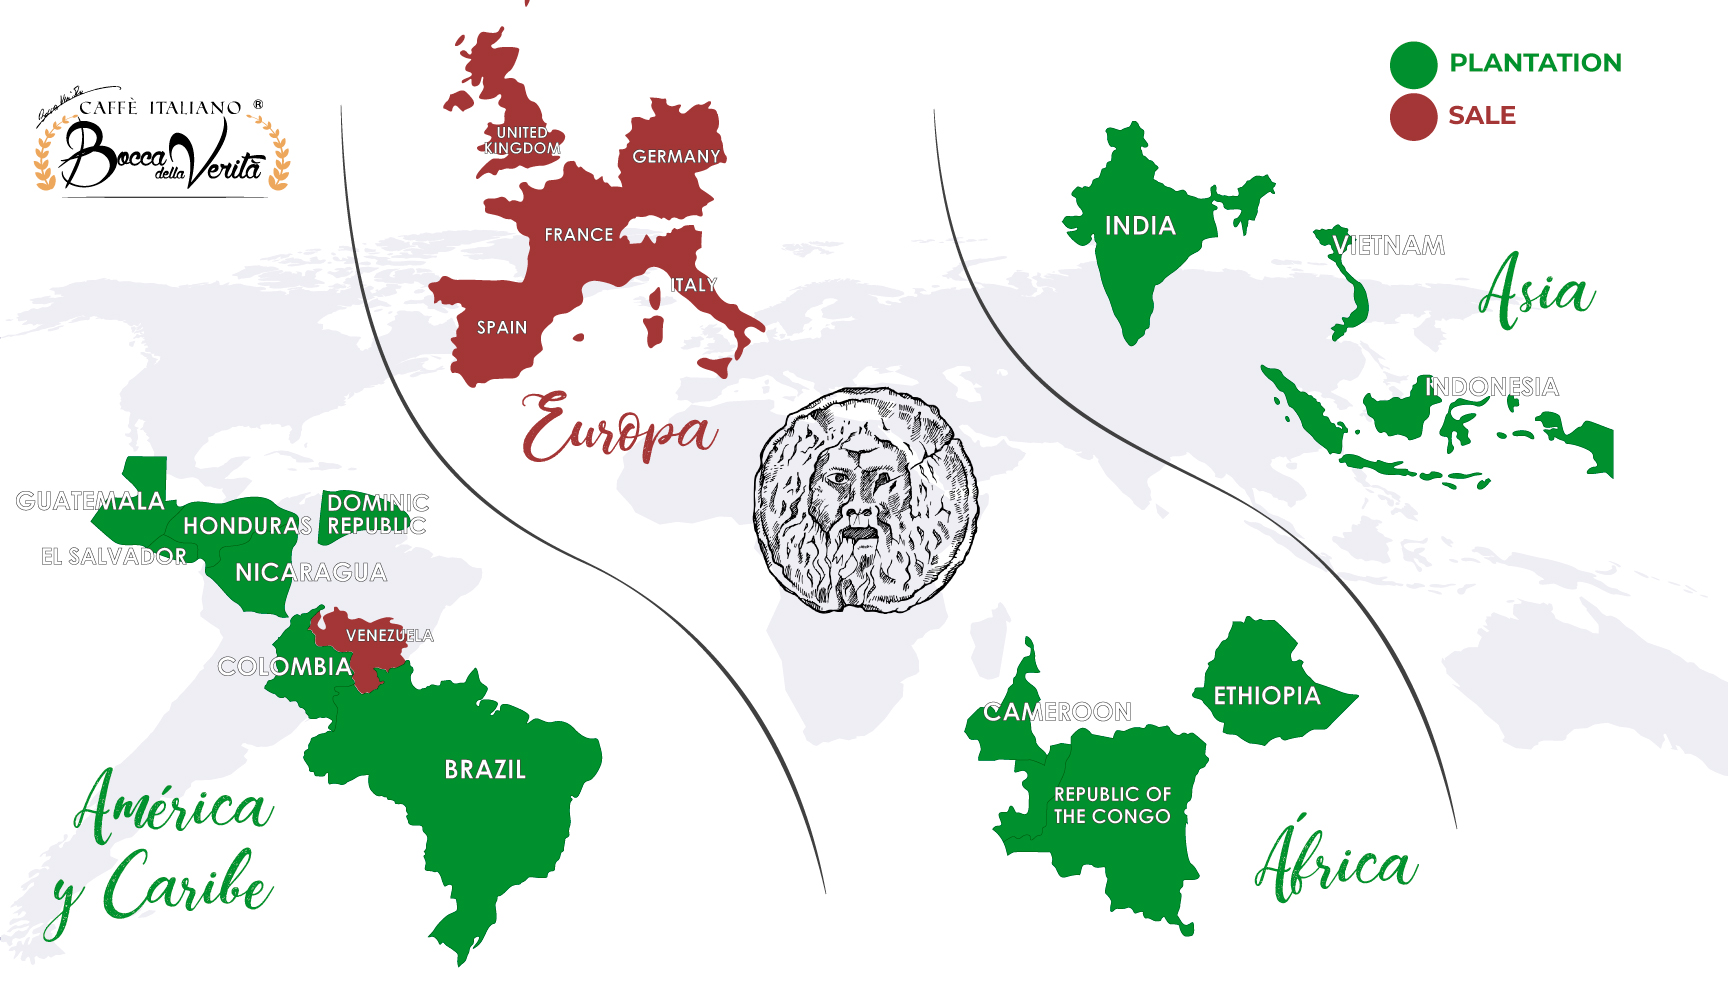 Mapa de plantaciones de nuestro café italiano y los lugares donde se vende